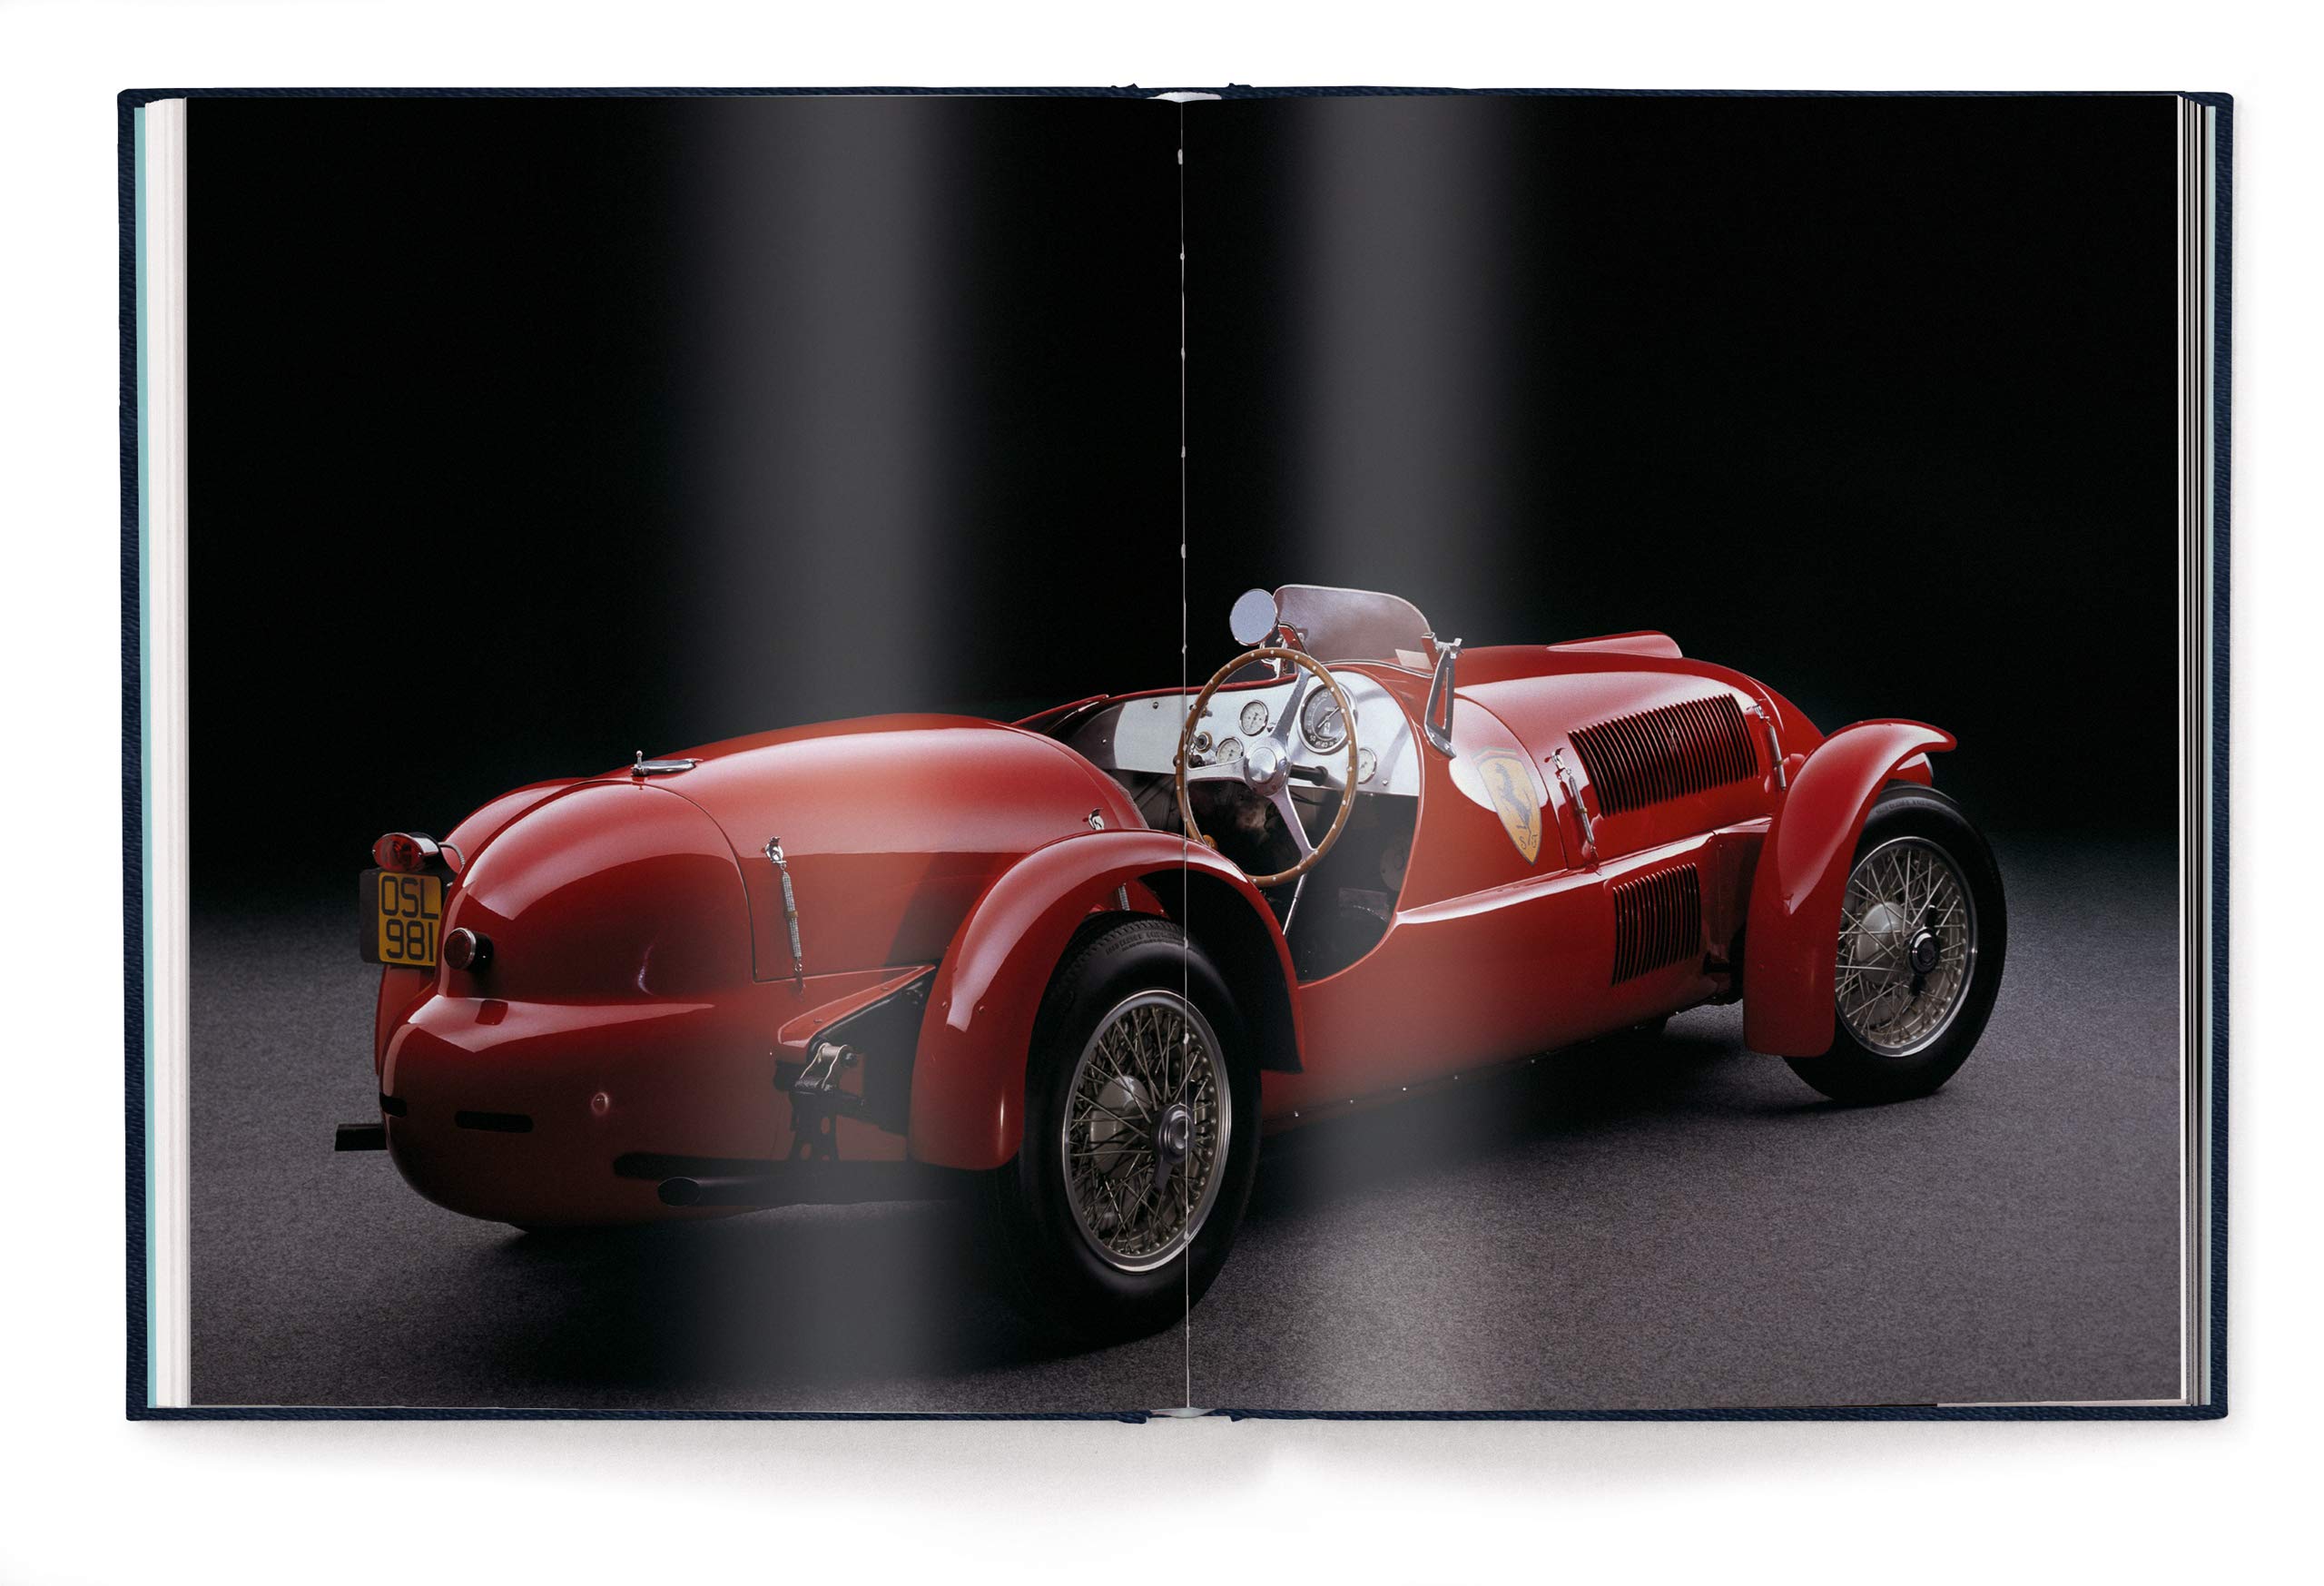 Ferrari Book: Passion For Design